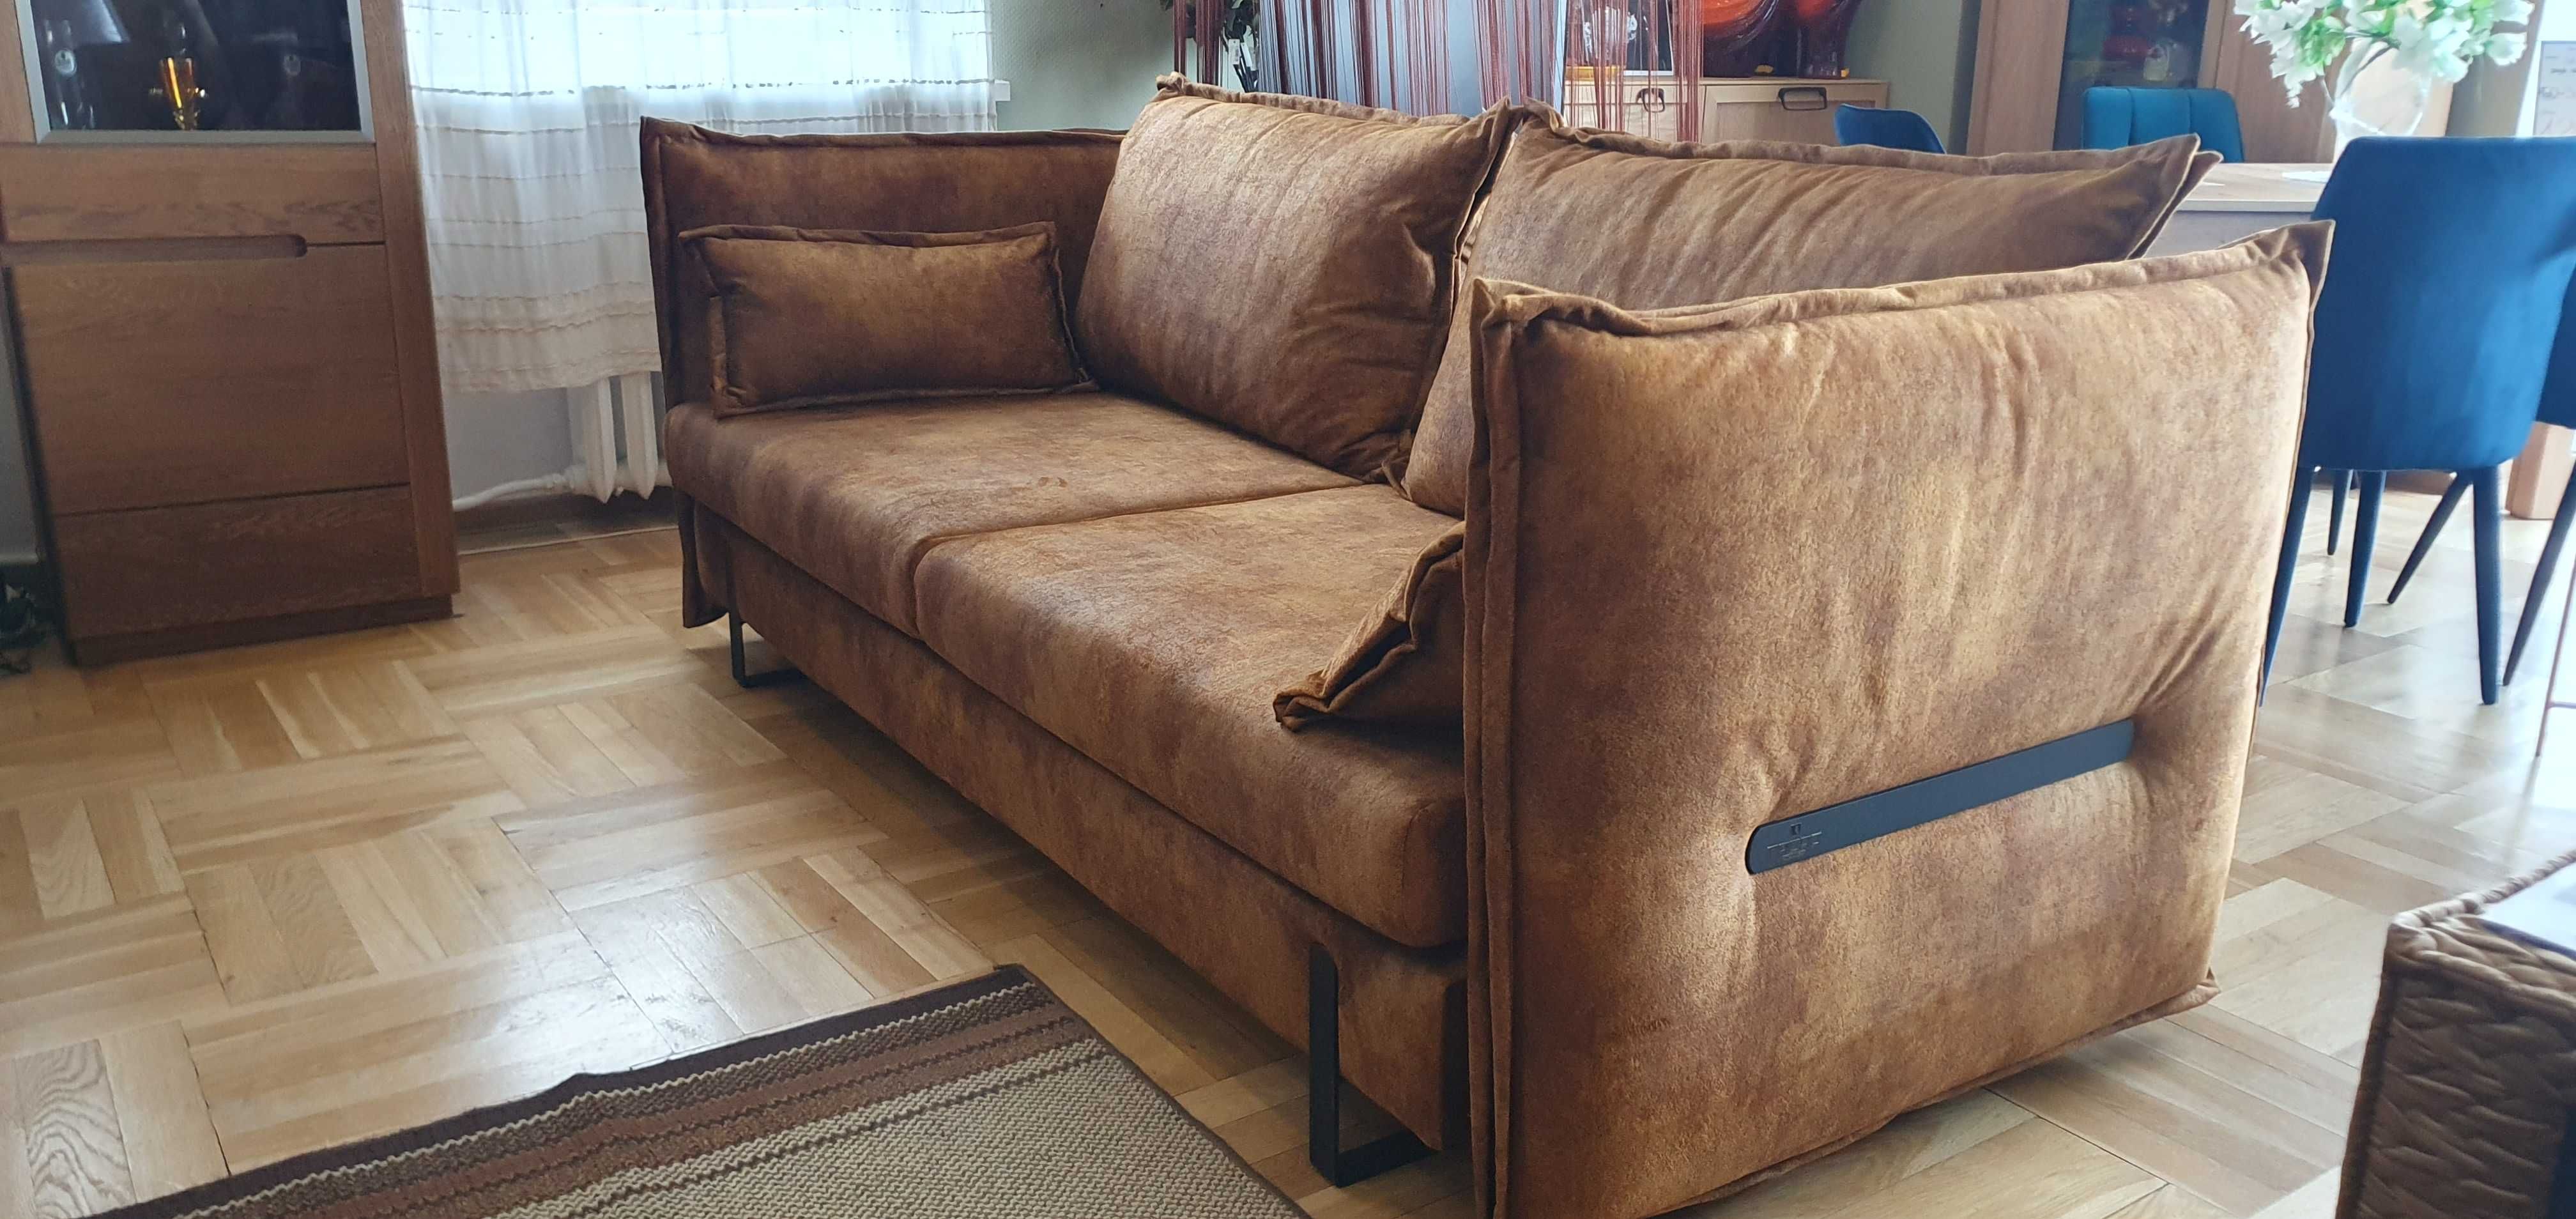 Piękna duża sofa ze spaniem 160 cm KENZO